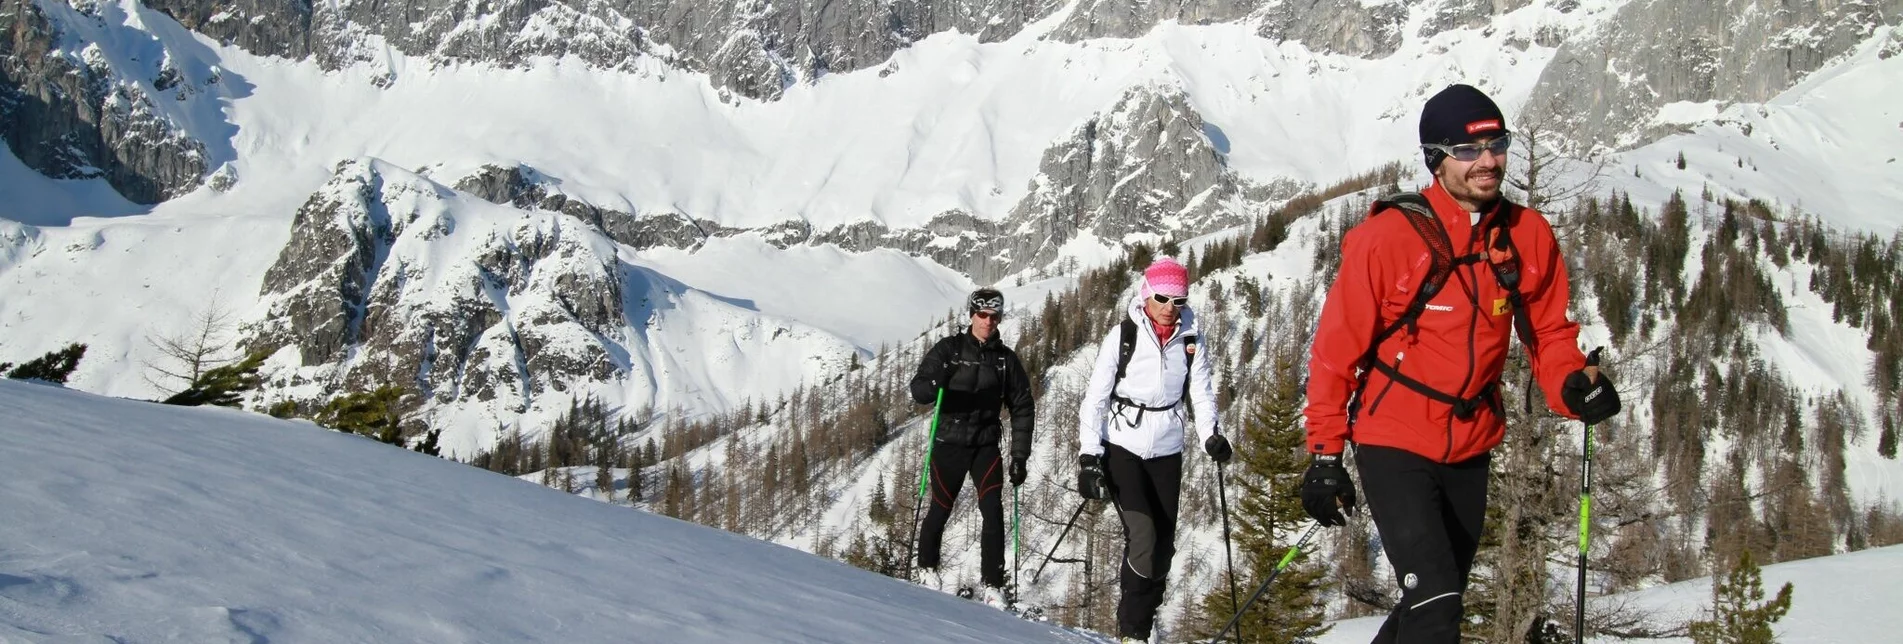 Skitour Skitour Sulzenhals mit Variante Windlegerscharte - Touren-Impression #1 | © Erlebnisregion Schladming-Dachstein